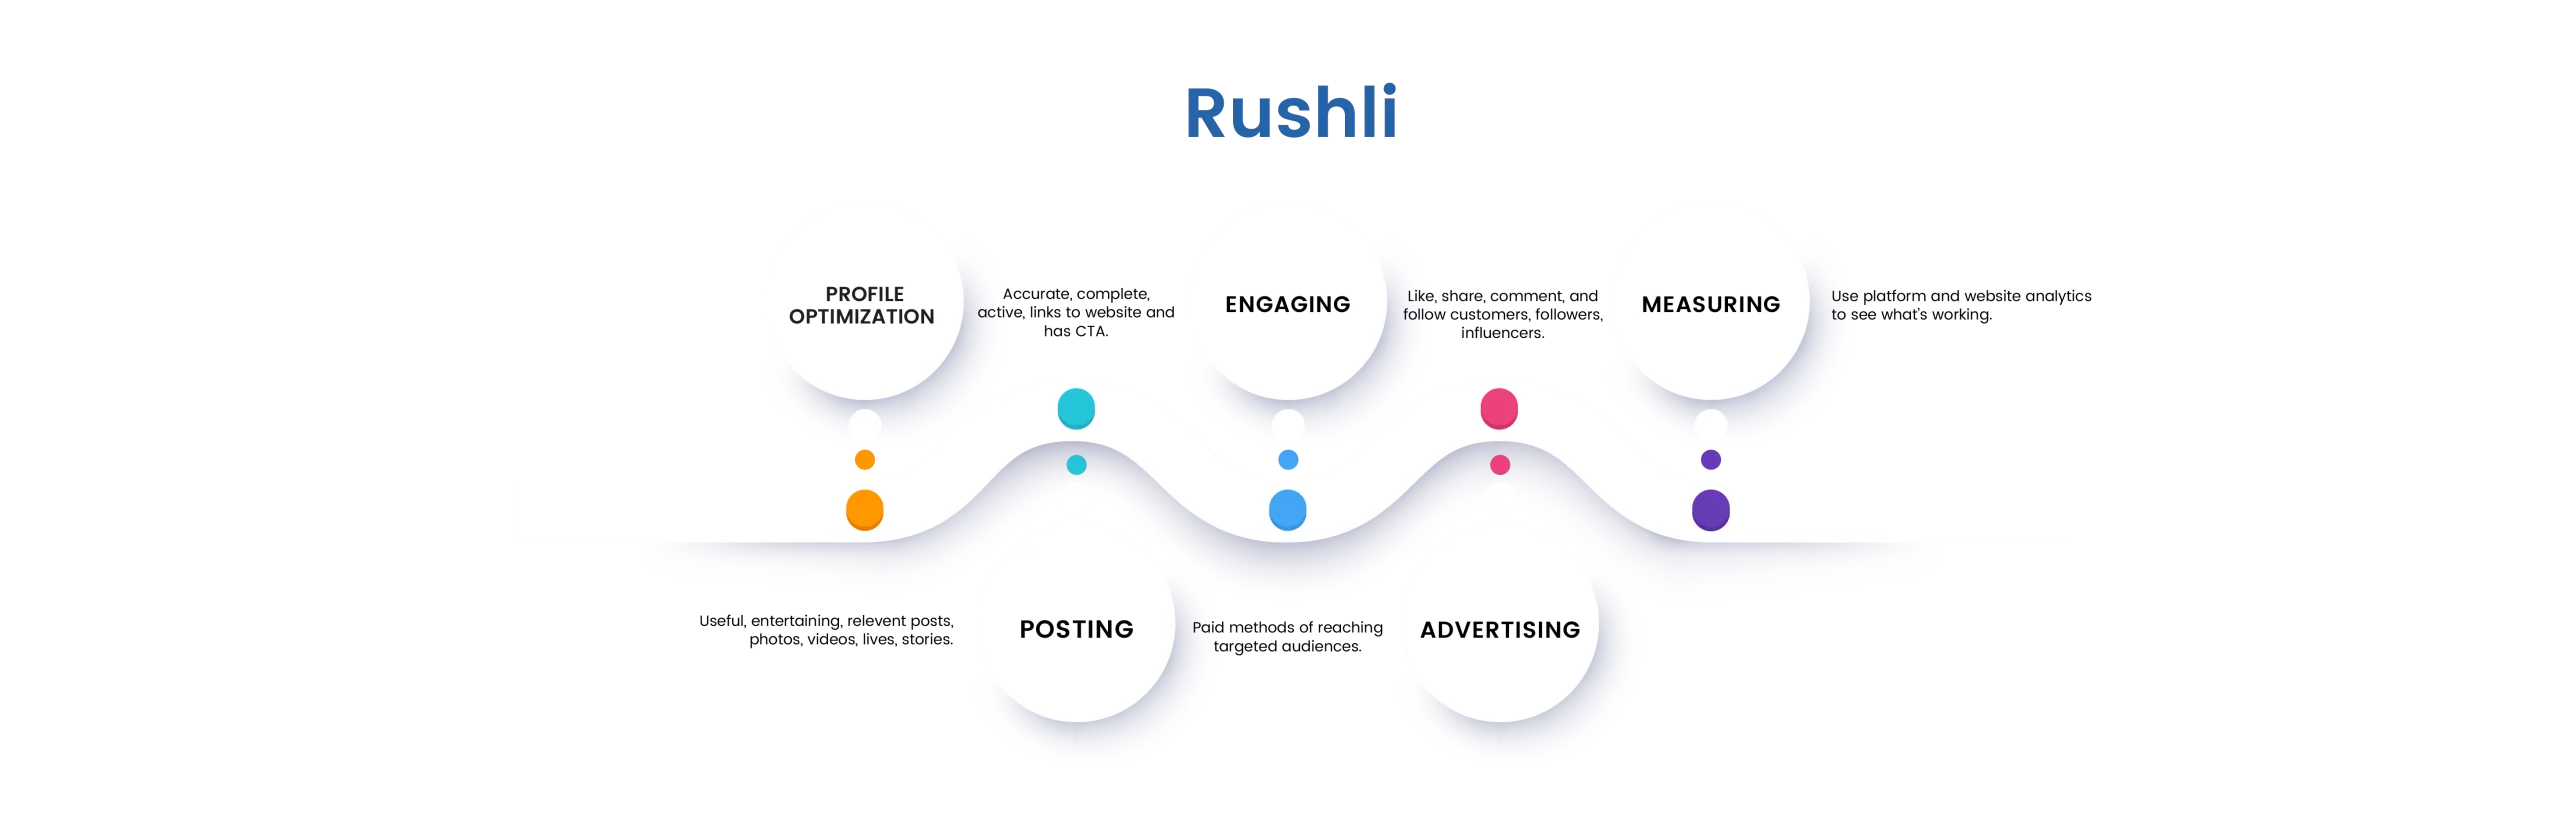 Rushli Marketing Strategy